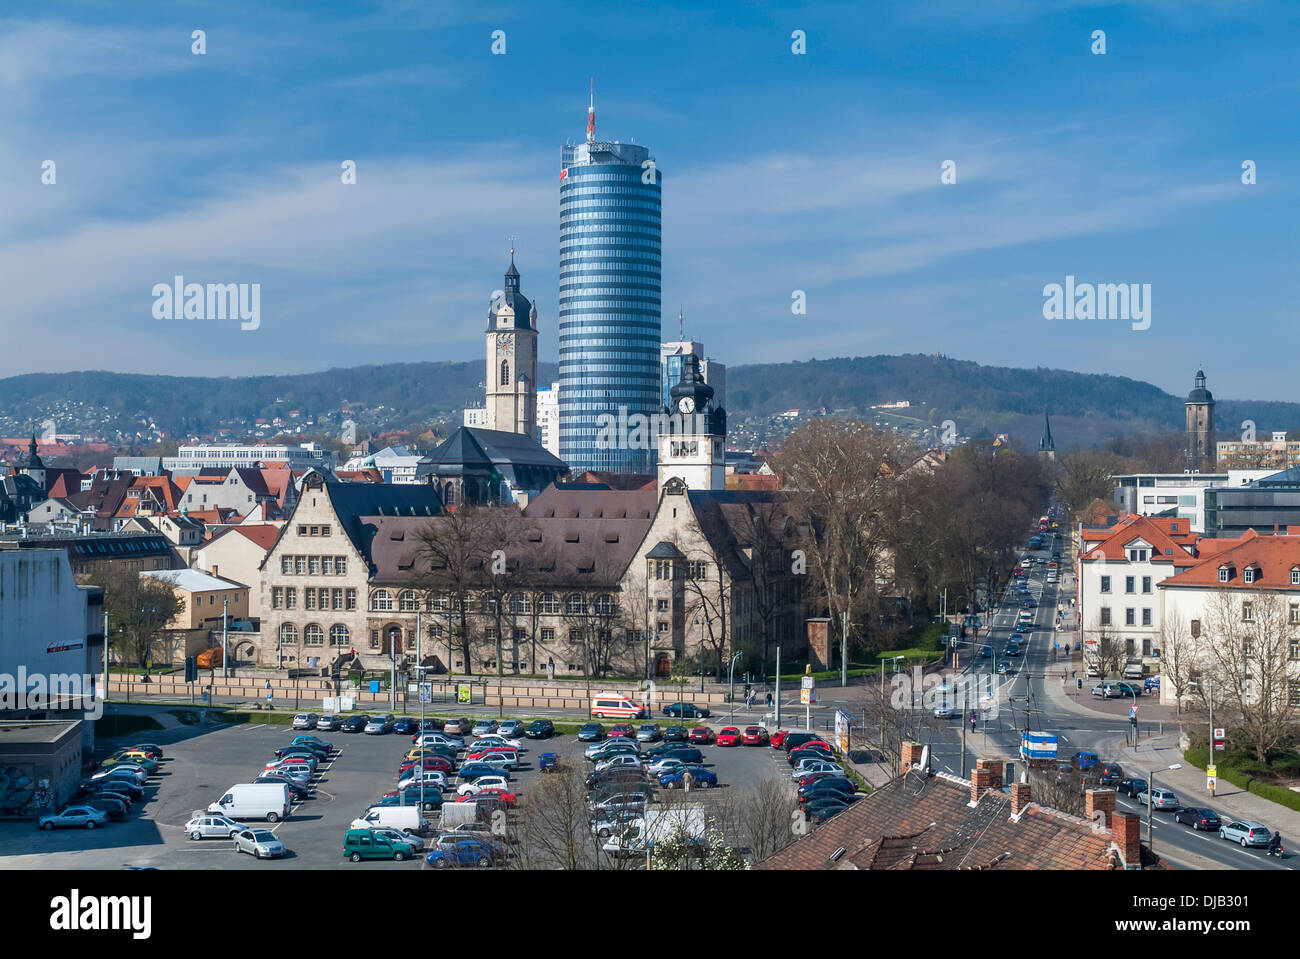 Vue urbaine avec l'université, l'église de la ville de Saint Michel et Jentower, Iéna, Thuringe, Allemagne Banque D'Images